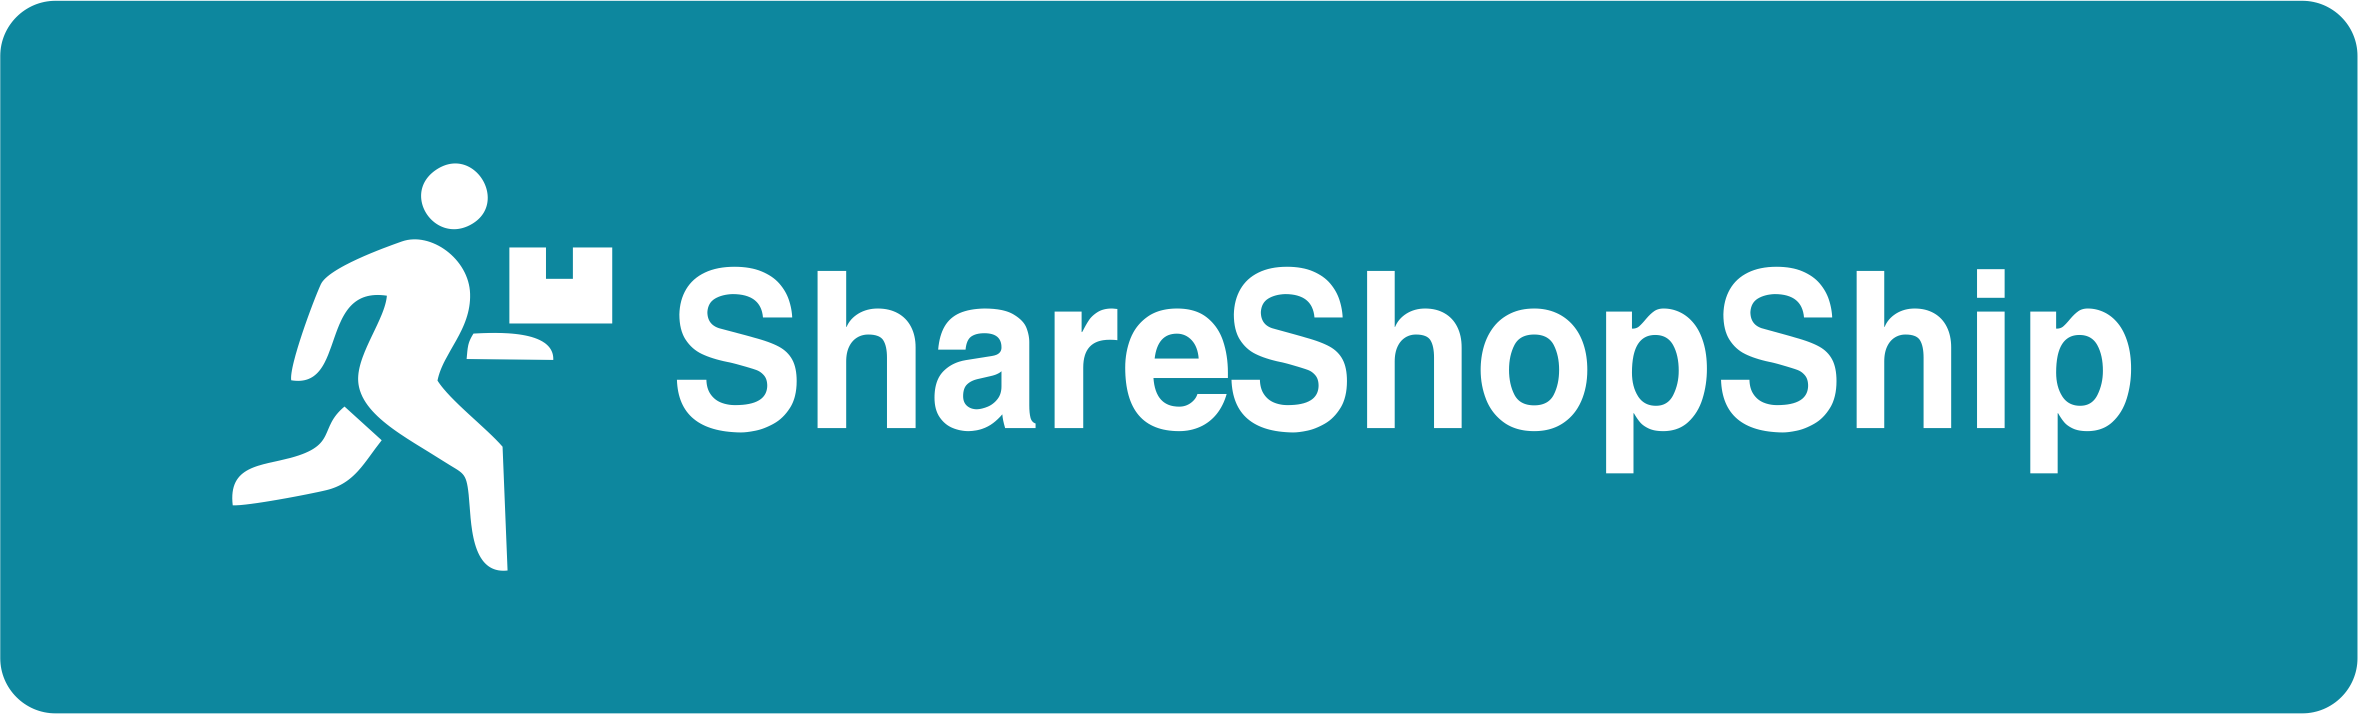 shareshopship